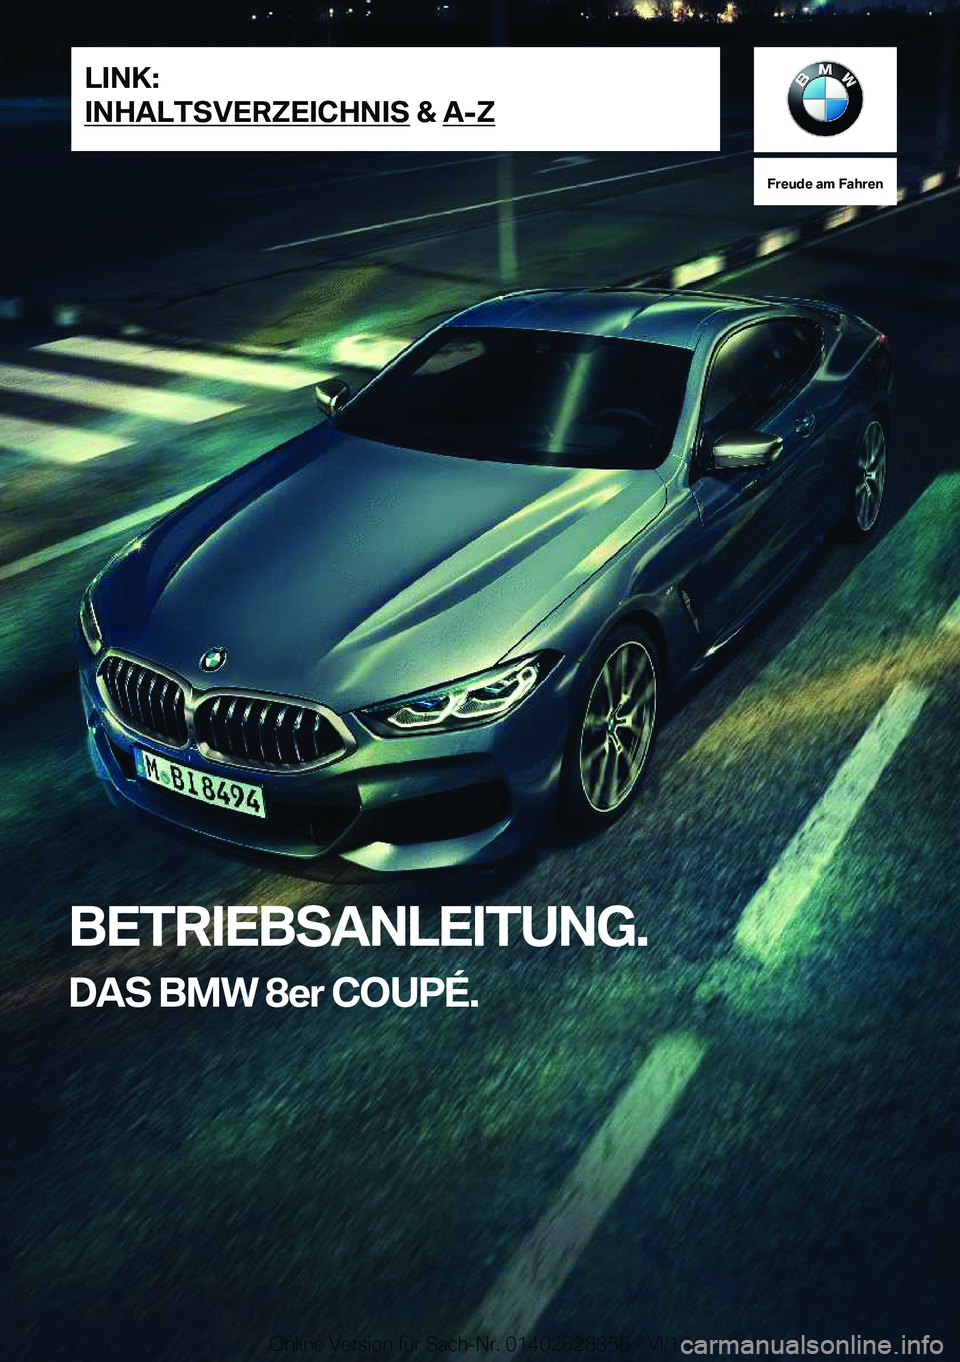 BMW 8 SERIES COUPE 2020  Betriebsanleitungen (in German) �F�r�e�u�d�e��a�m��F�a�h�r�e�n
�B�E�T�R�I�E�B�S�A�N�L�E�I�T�U�N�G�.�D�A�S��B�M�W��8�e�r��C�O�U�P�